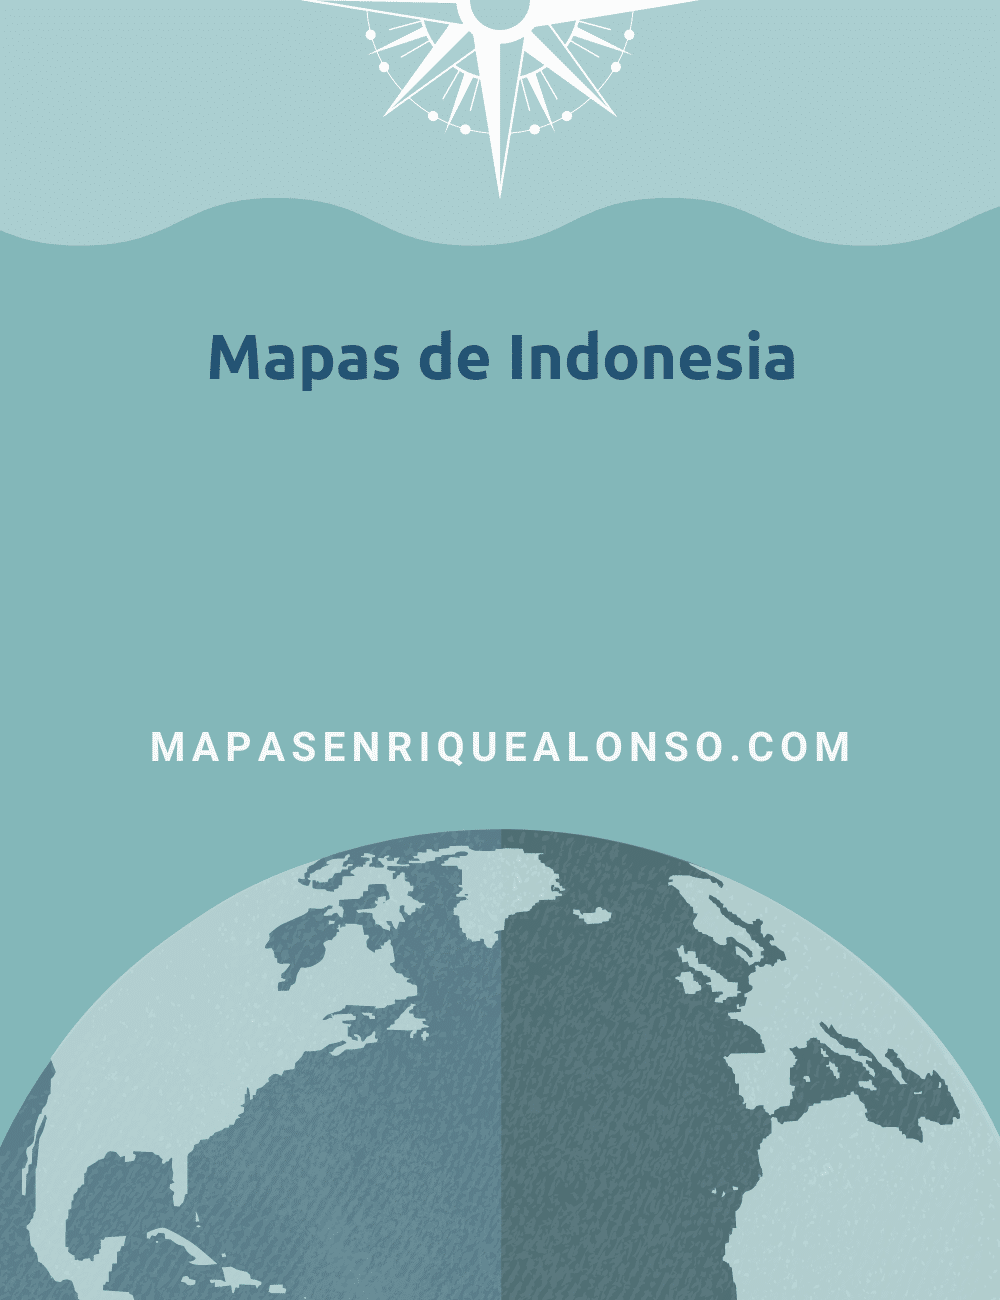 Mapas de Indonesia